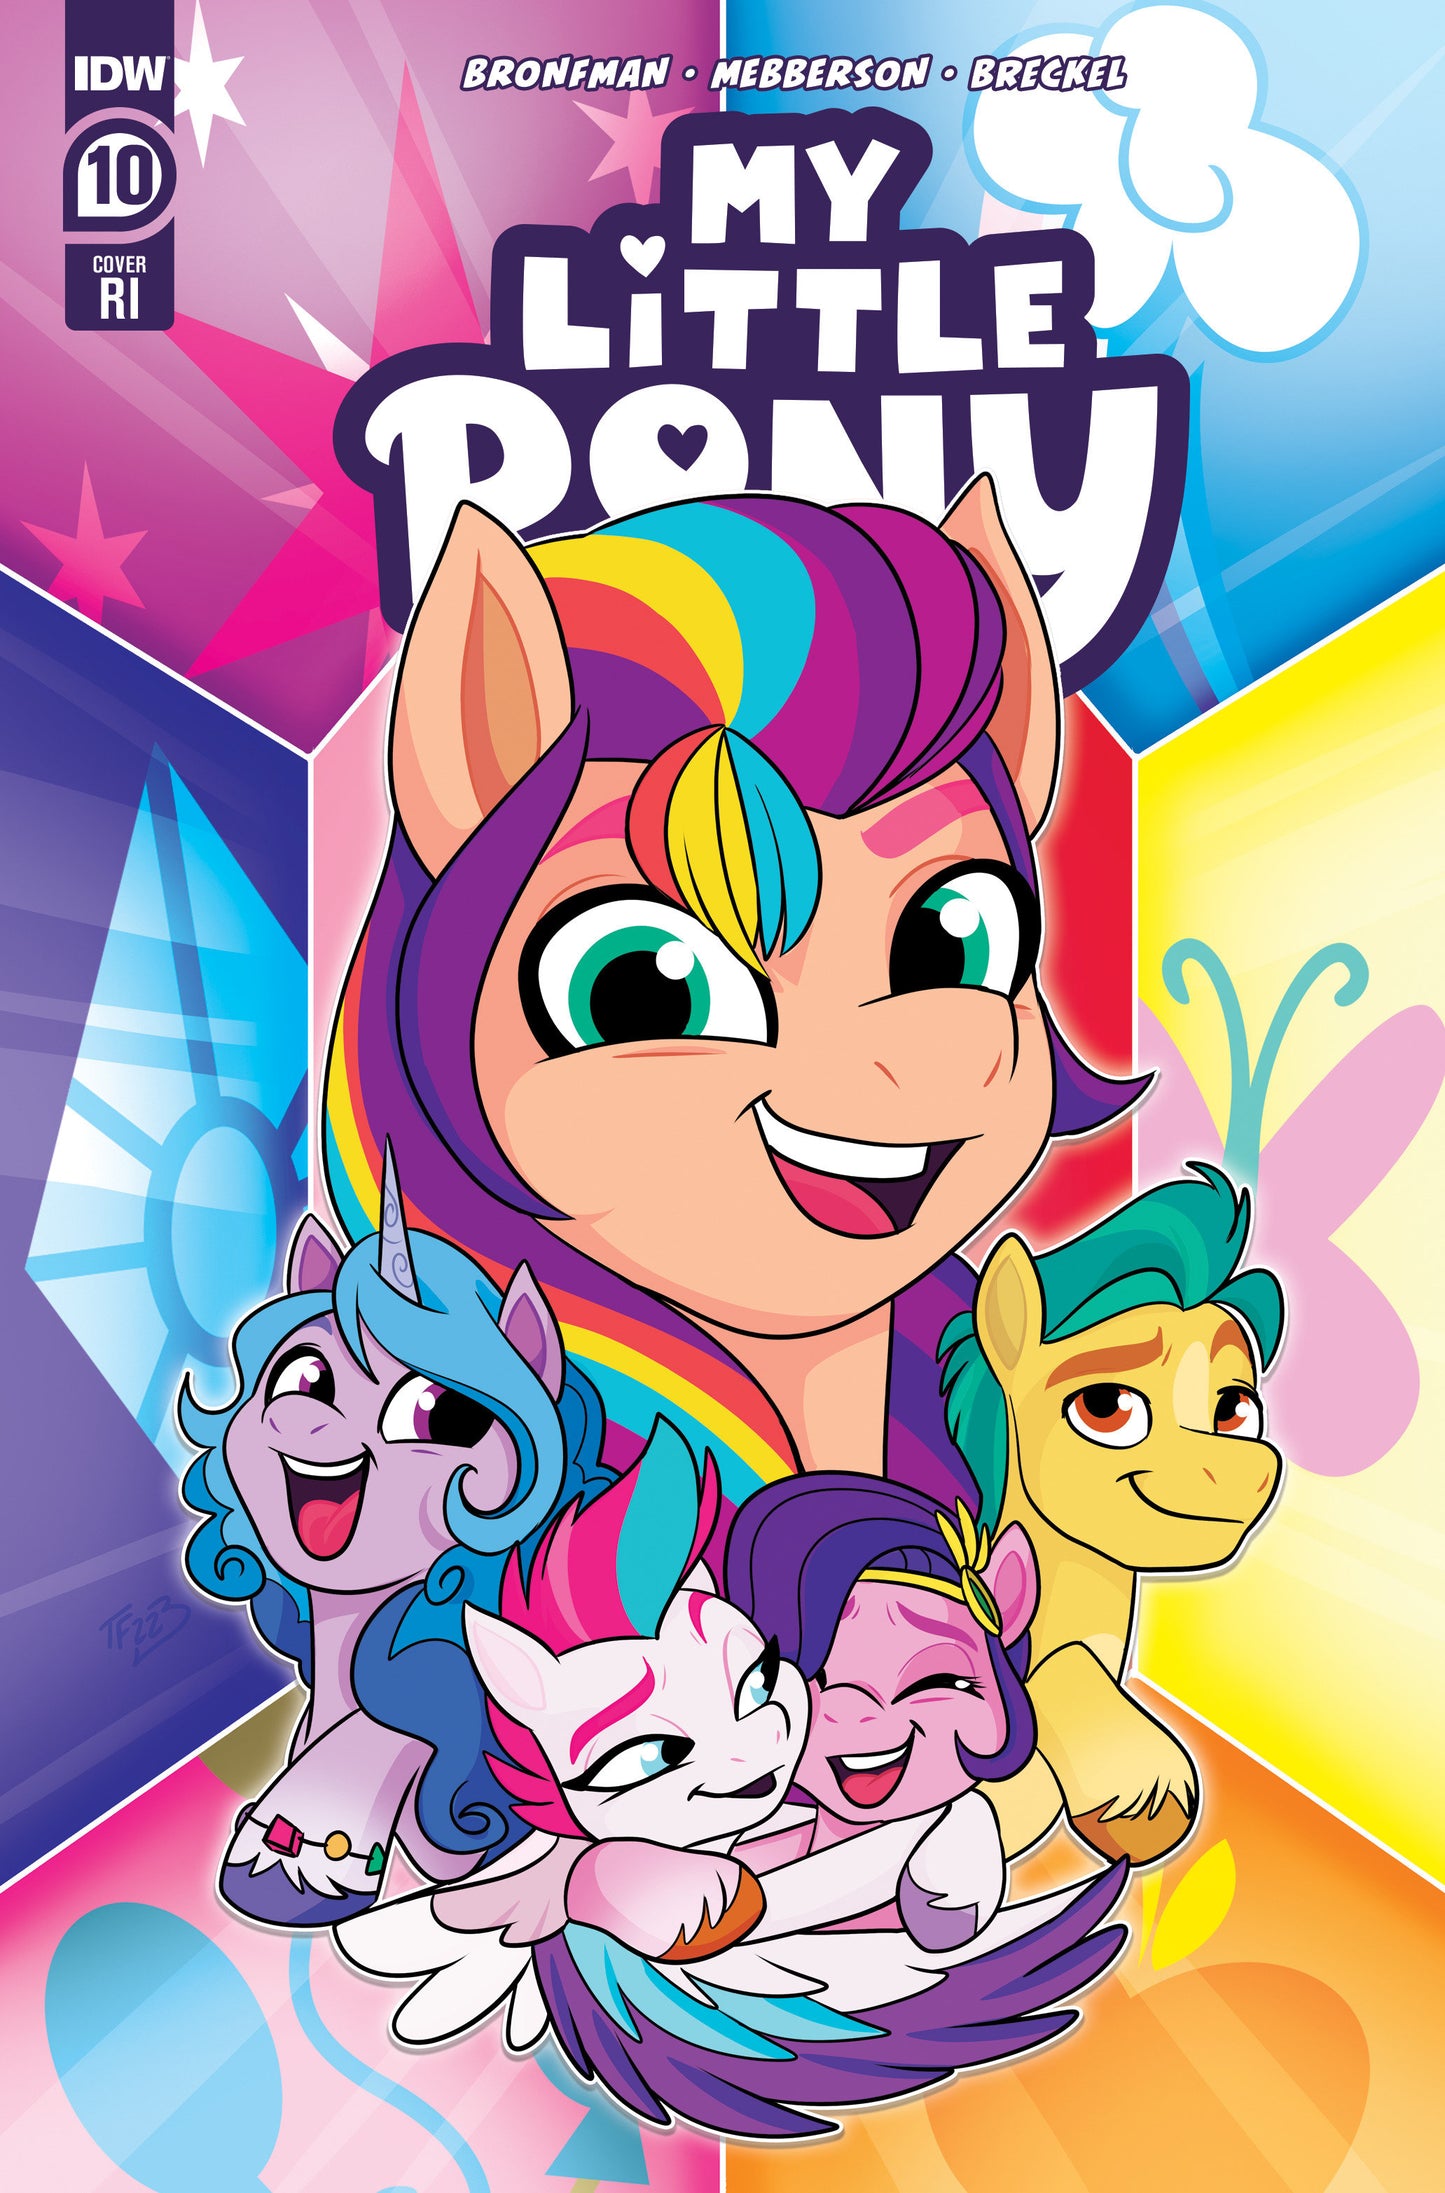 My Little Pony #10 Variant RI (10) (Forstner)